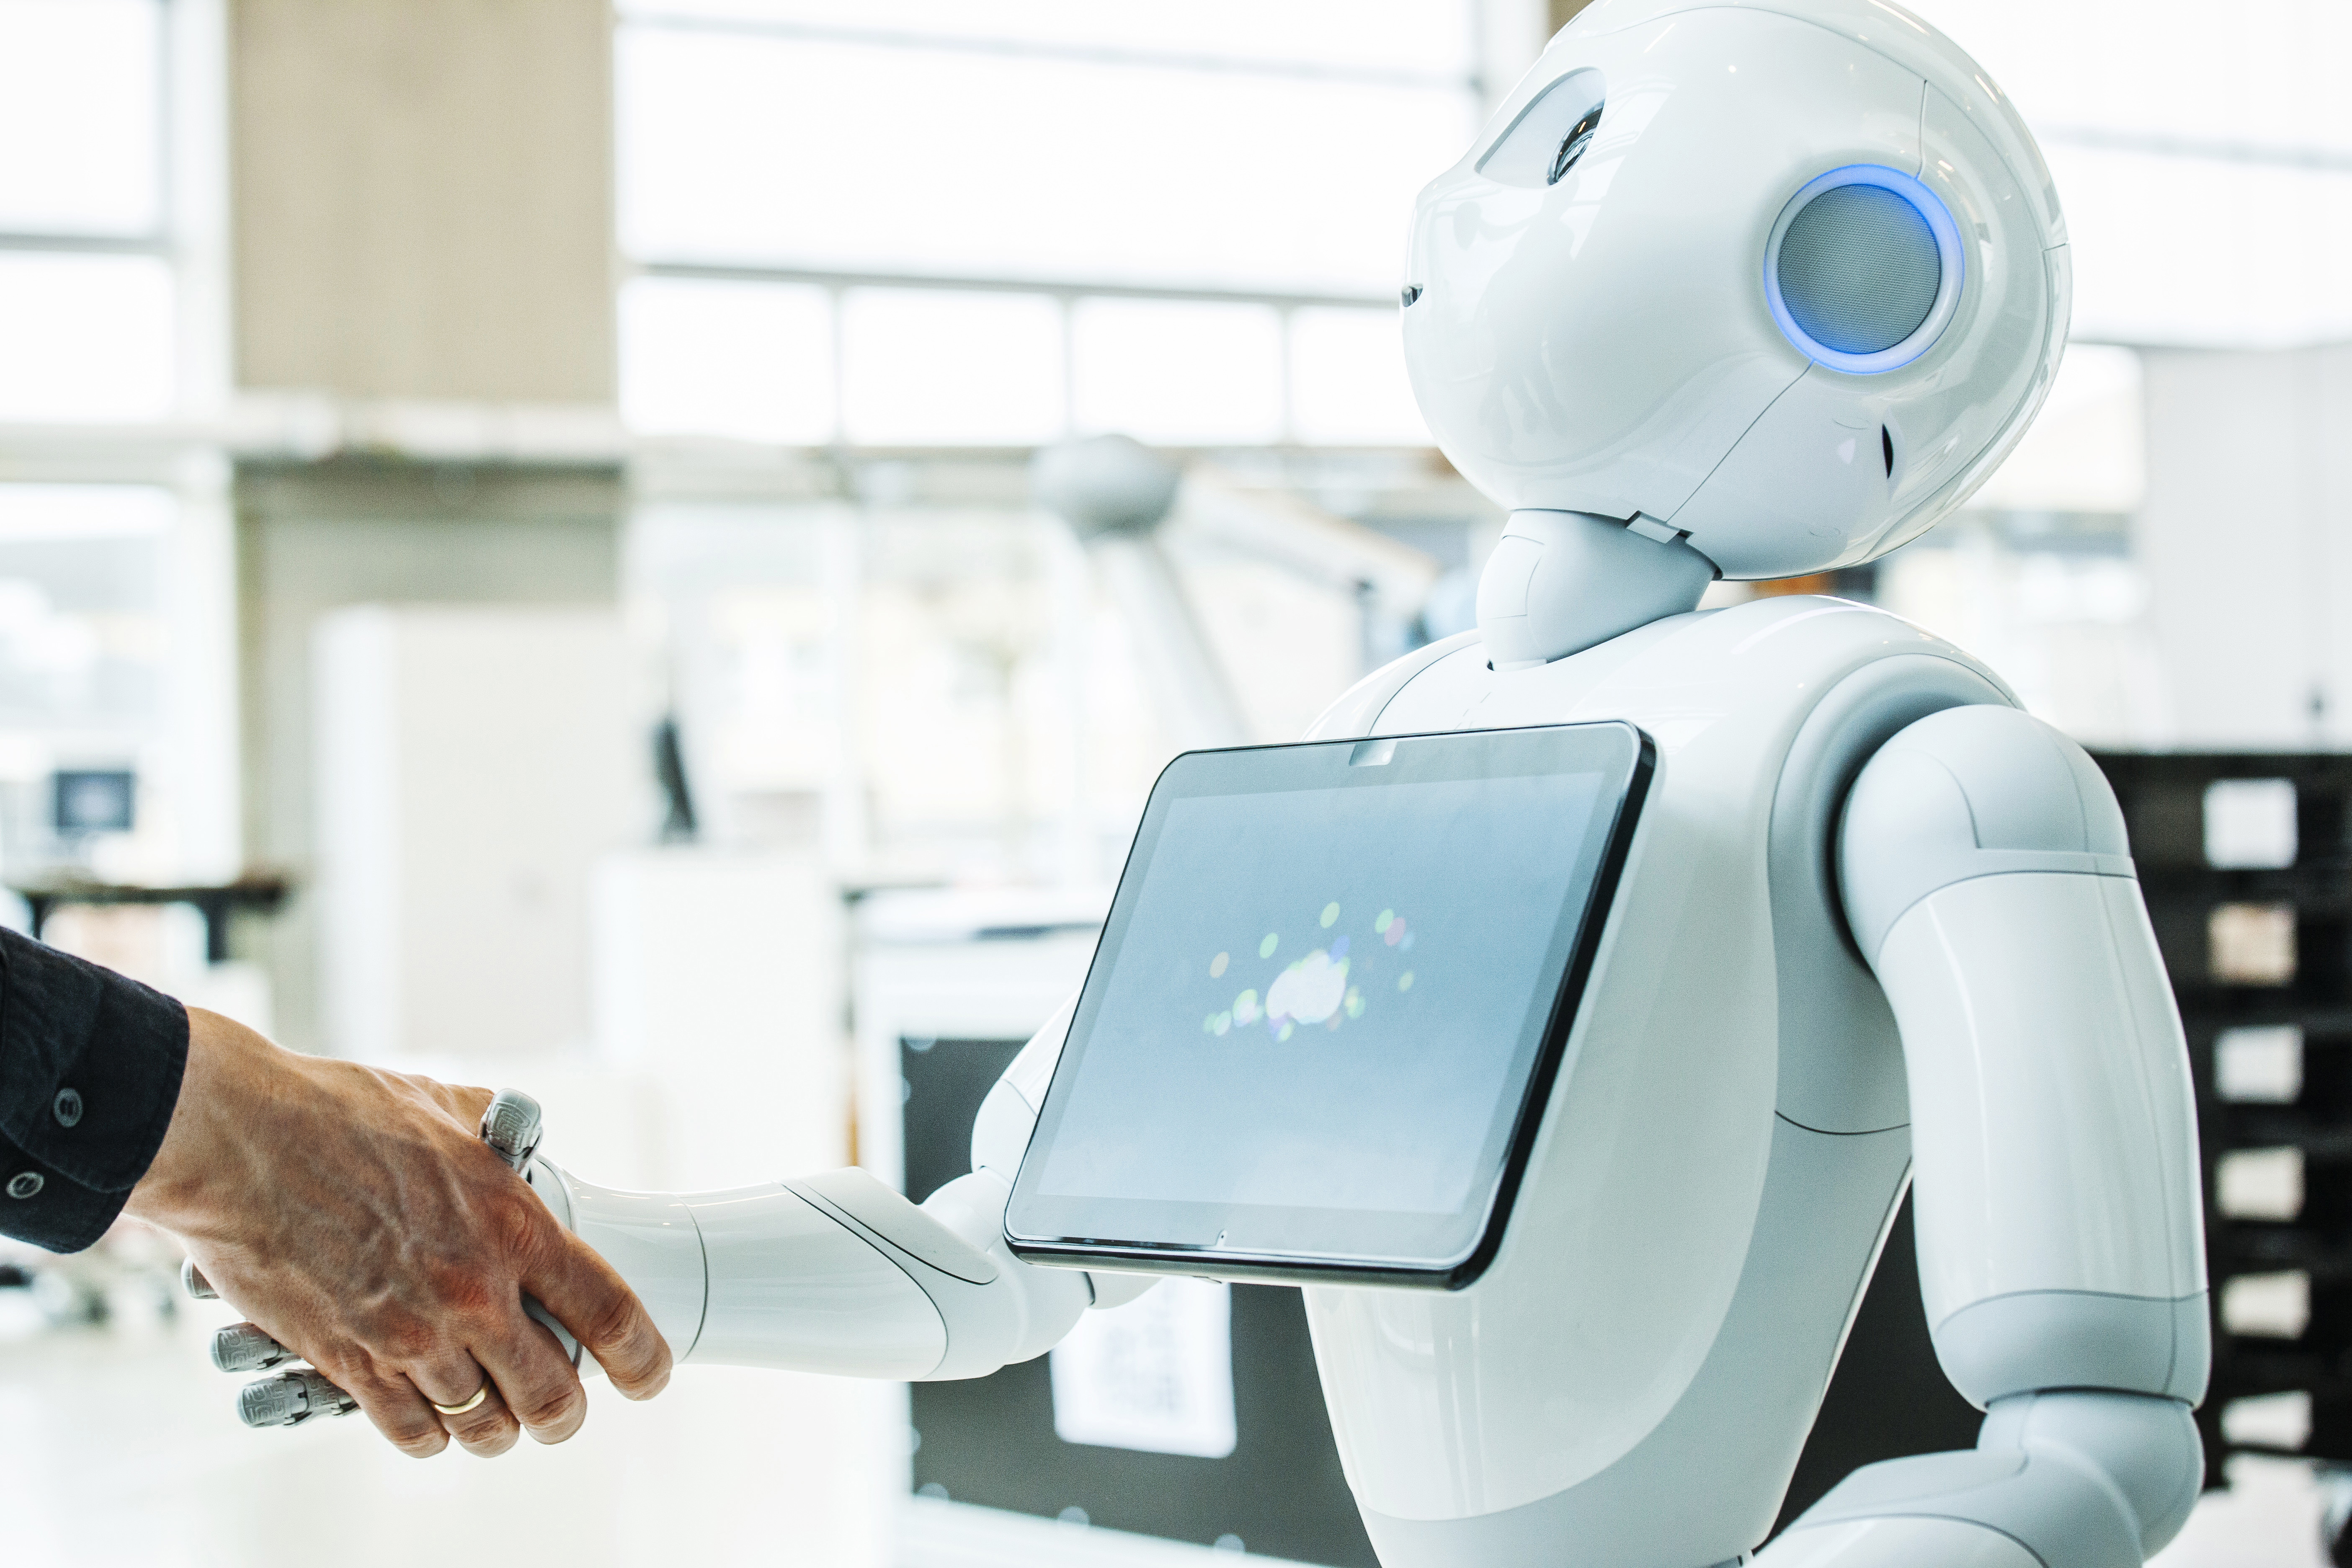 robot skal indgå i efteruddannelse | Teknologisk Institut